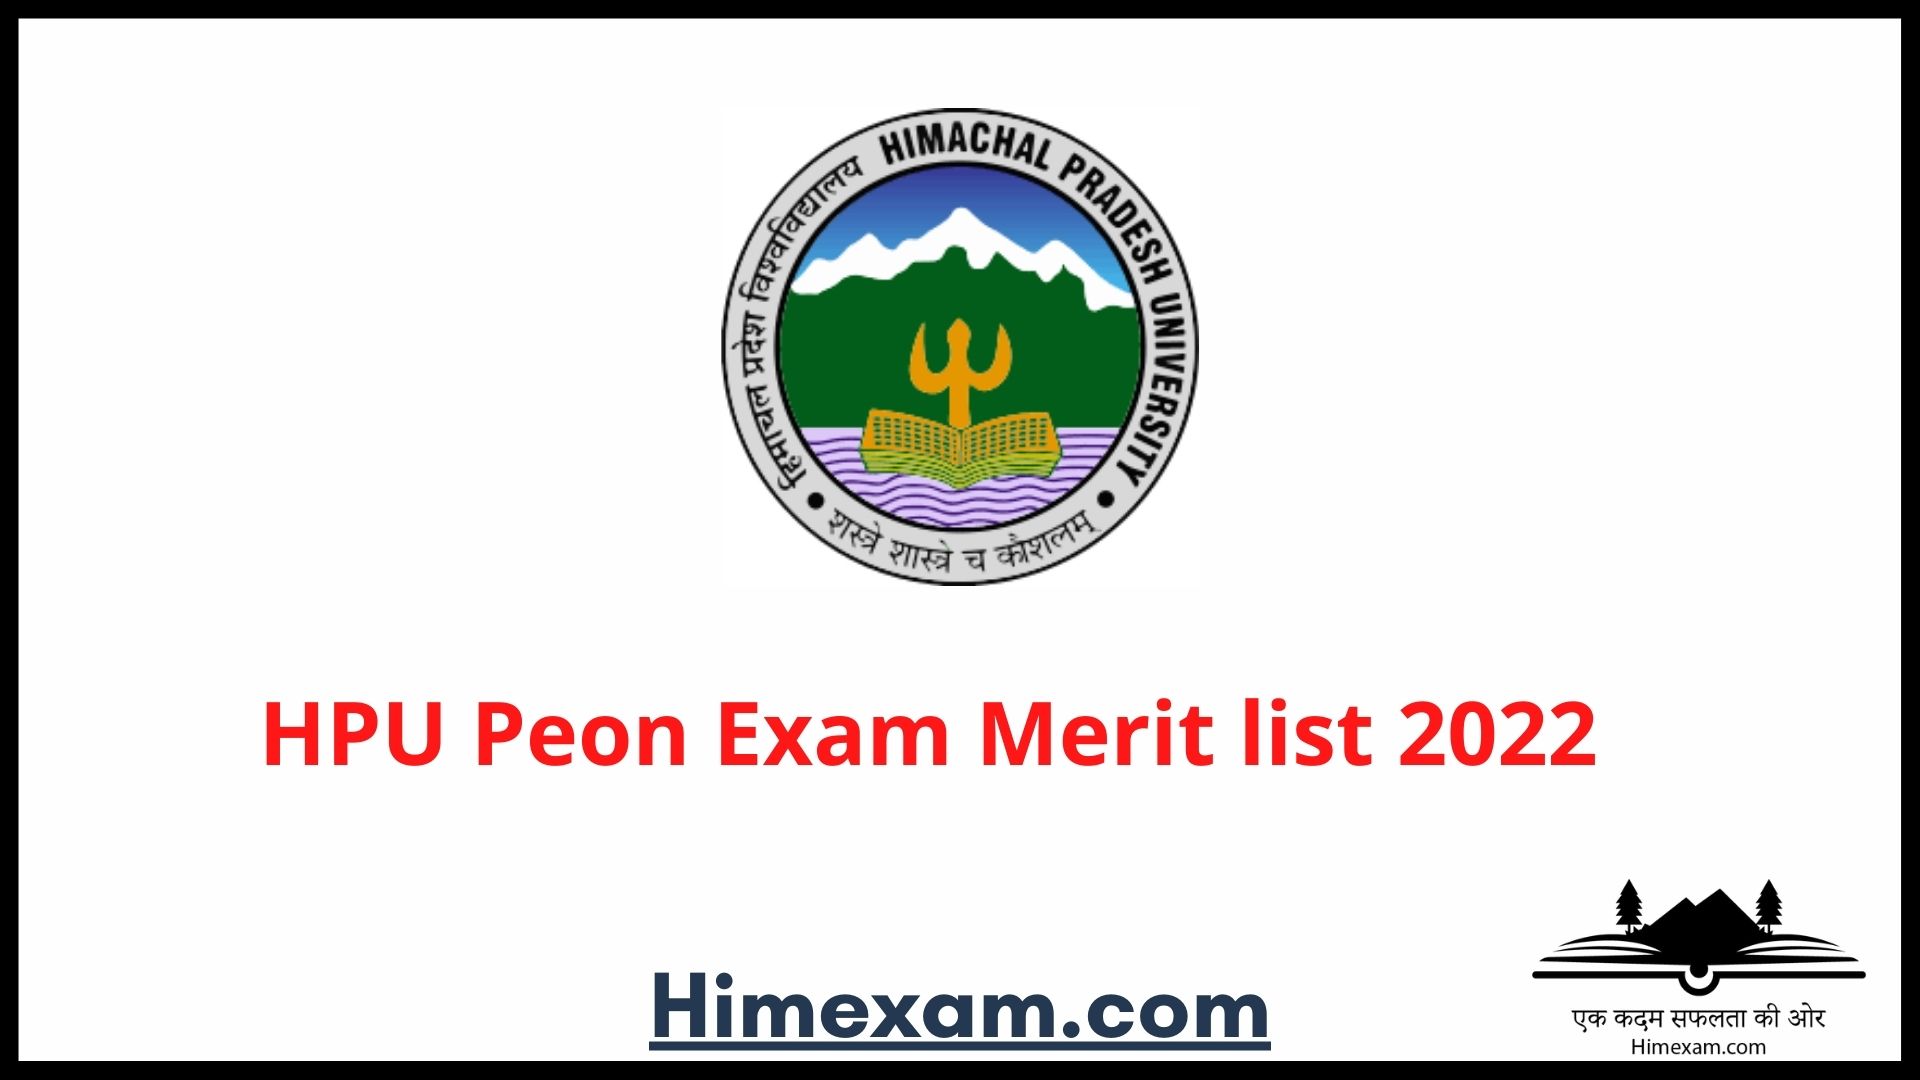 HPU Peon Exam Merit list 2022